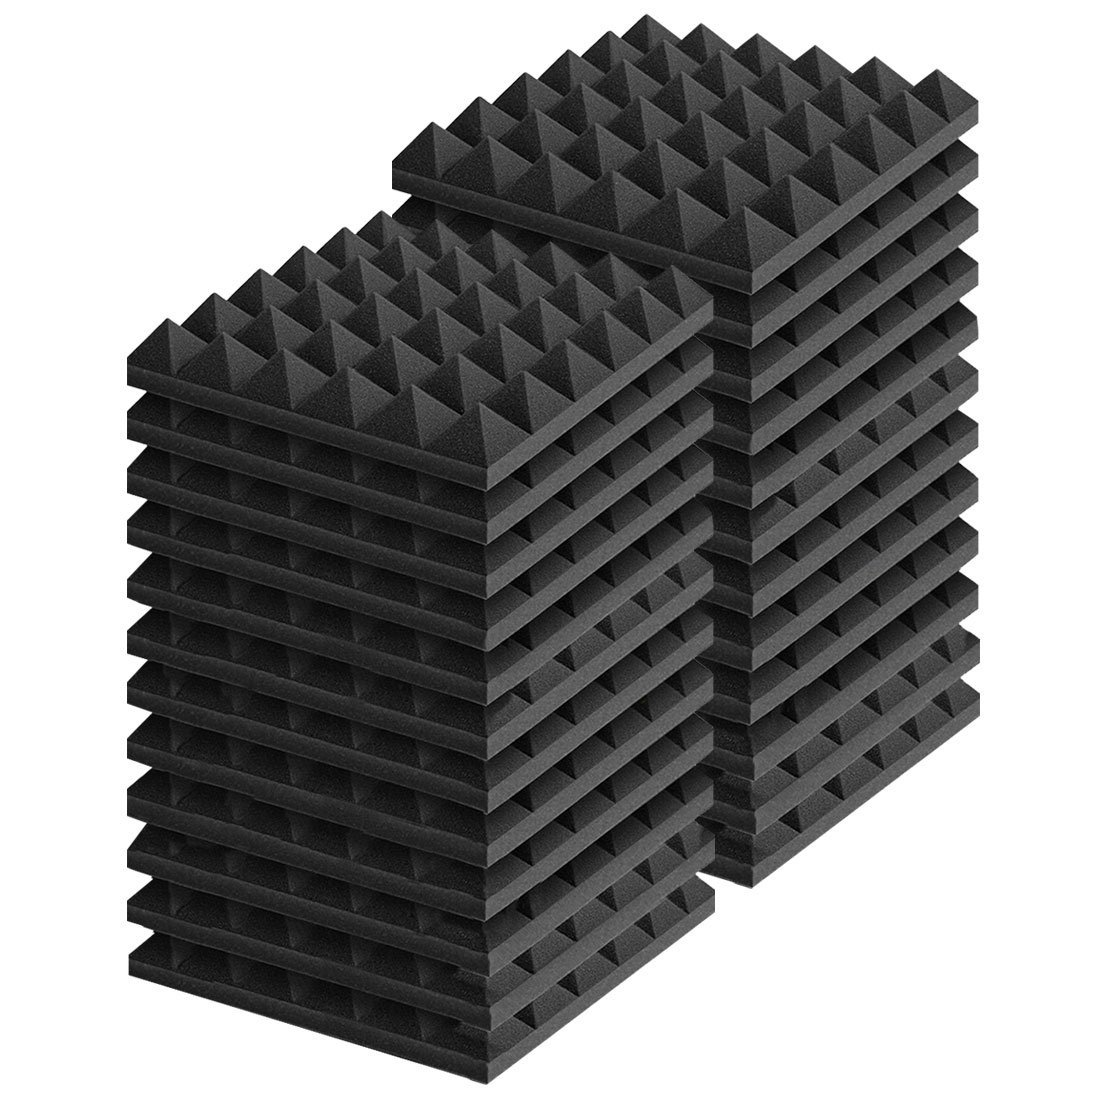 吸音材 防音材 ウレタン 24枚セット 30*30cm 厚さ5cm ピラミッド 壁 難燃 無害 吸音対策_画像1